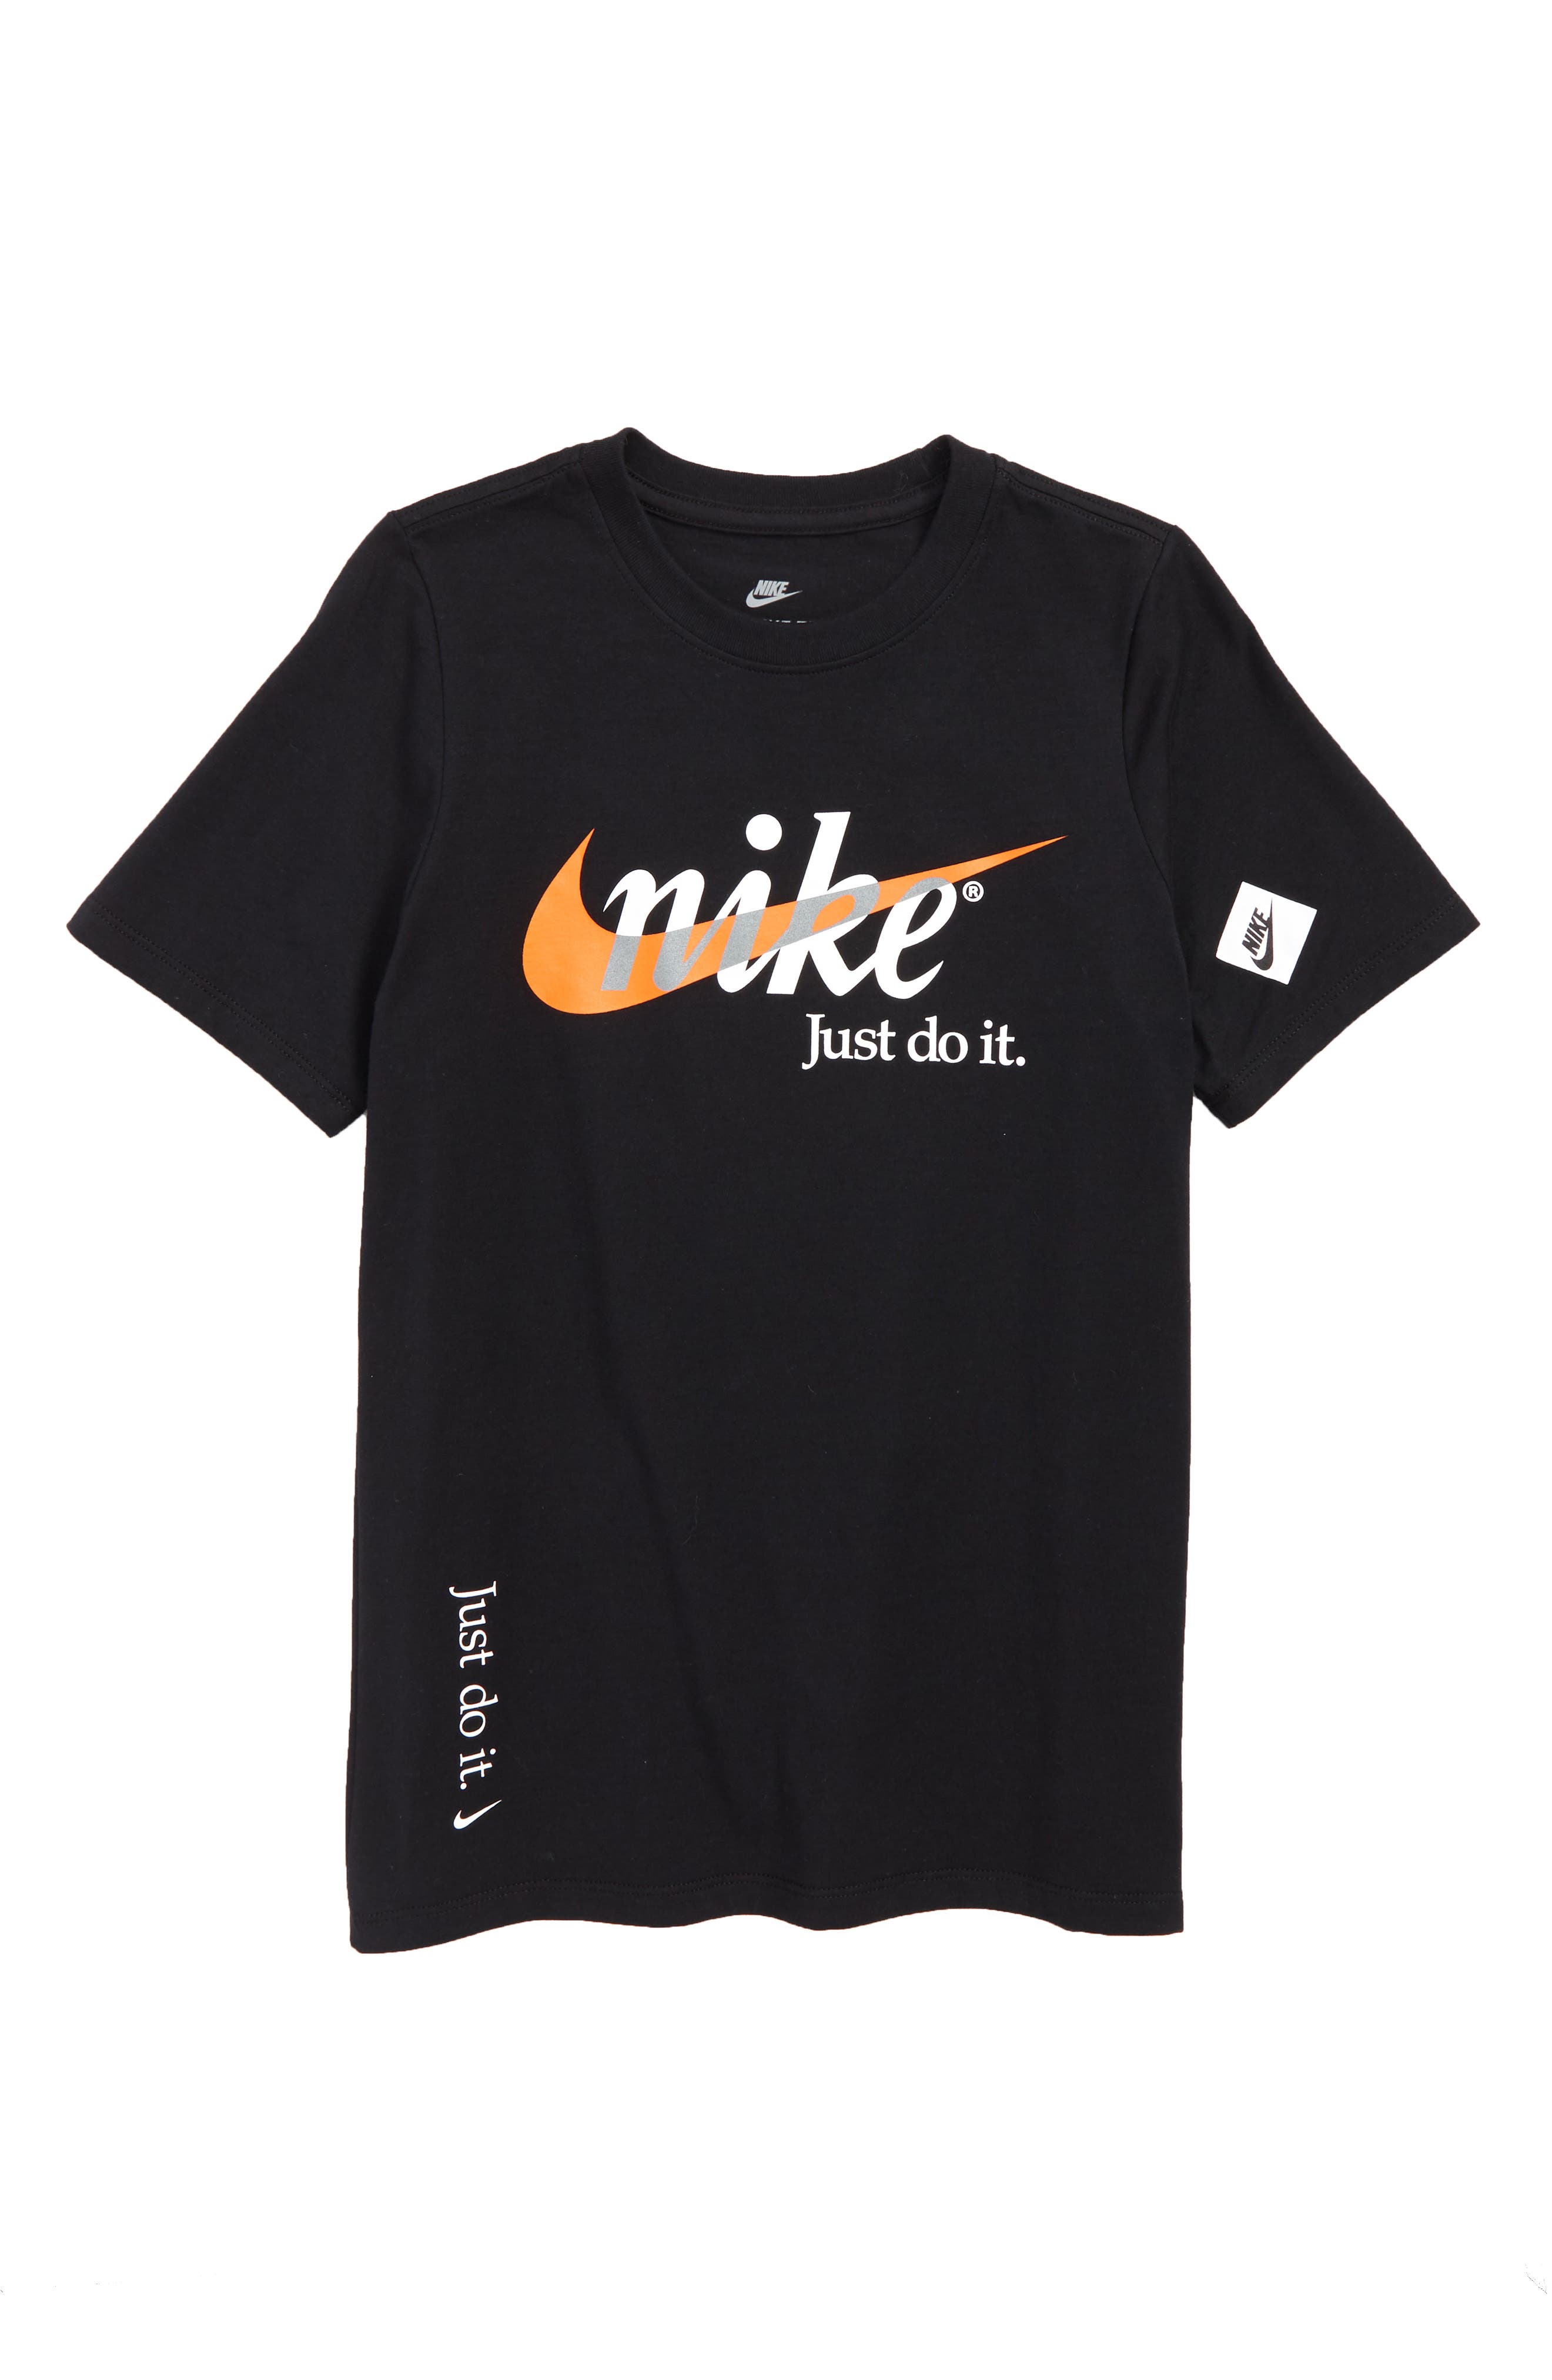 nike just do it shirt black and orange